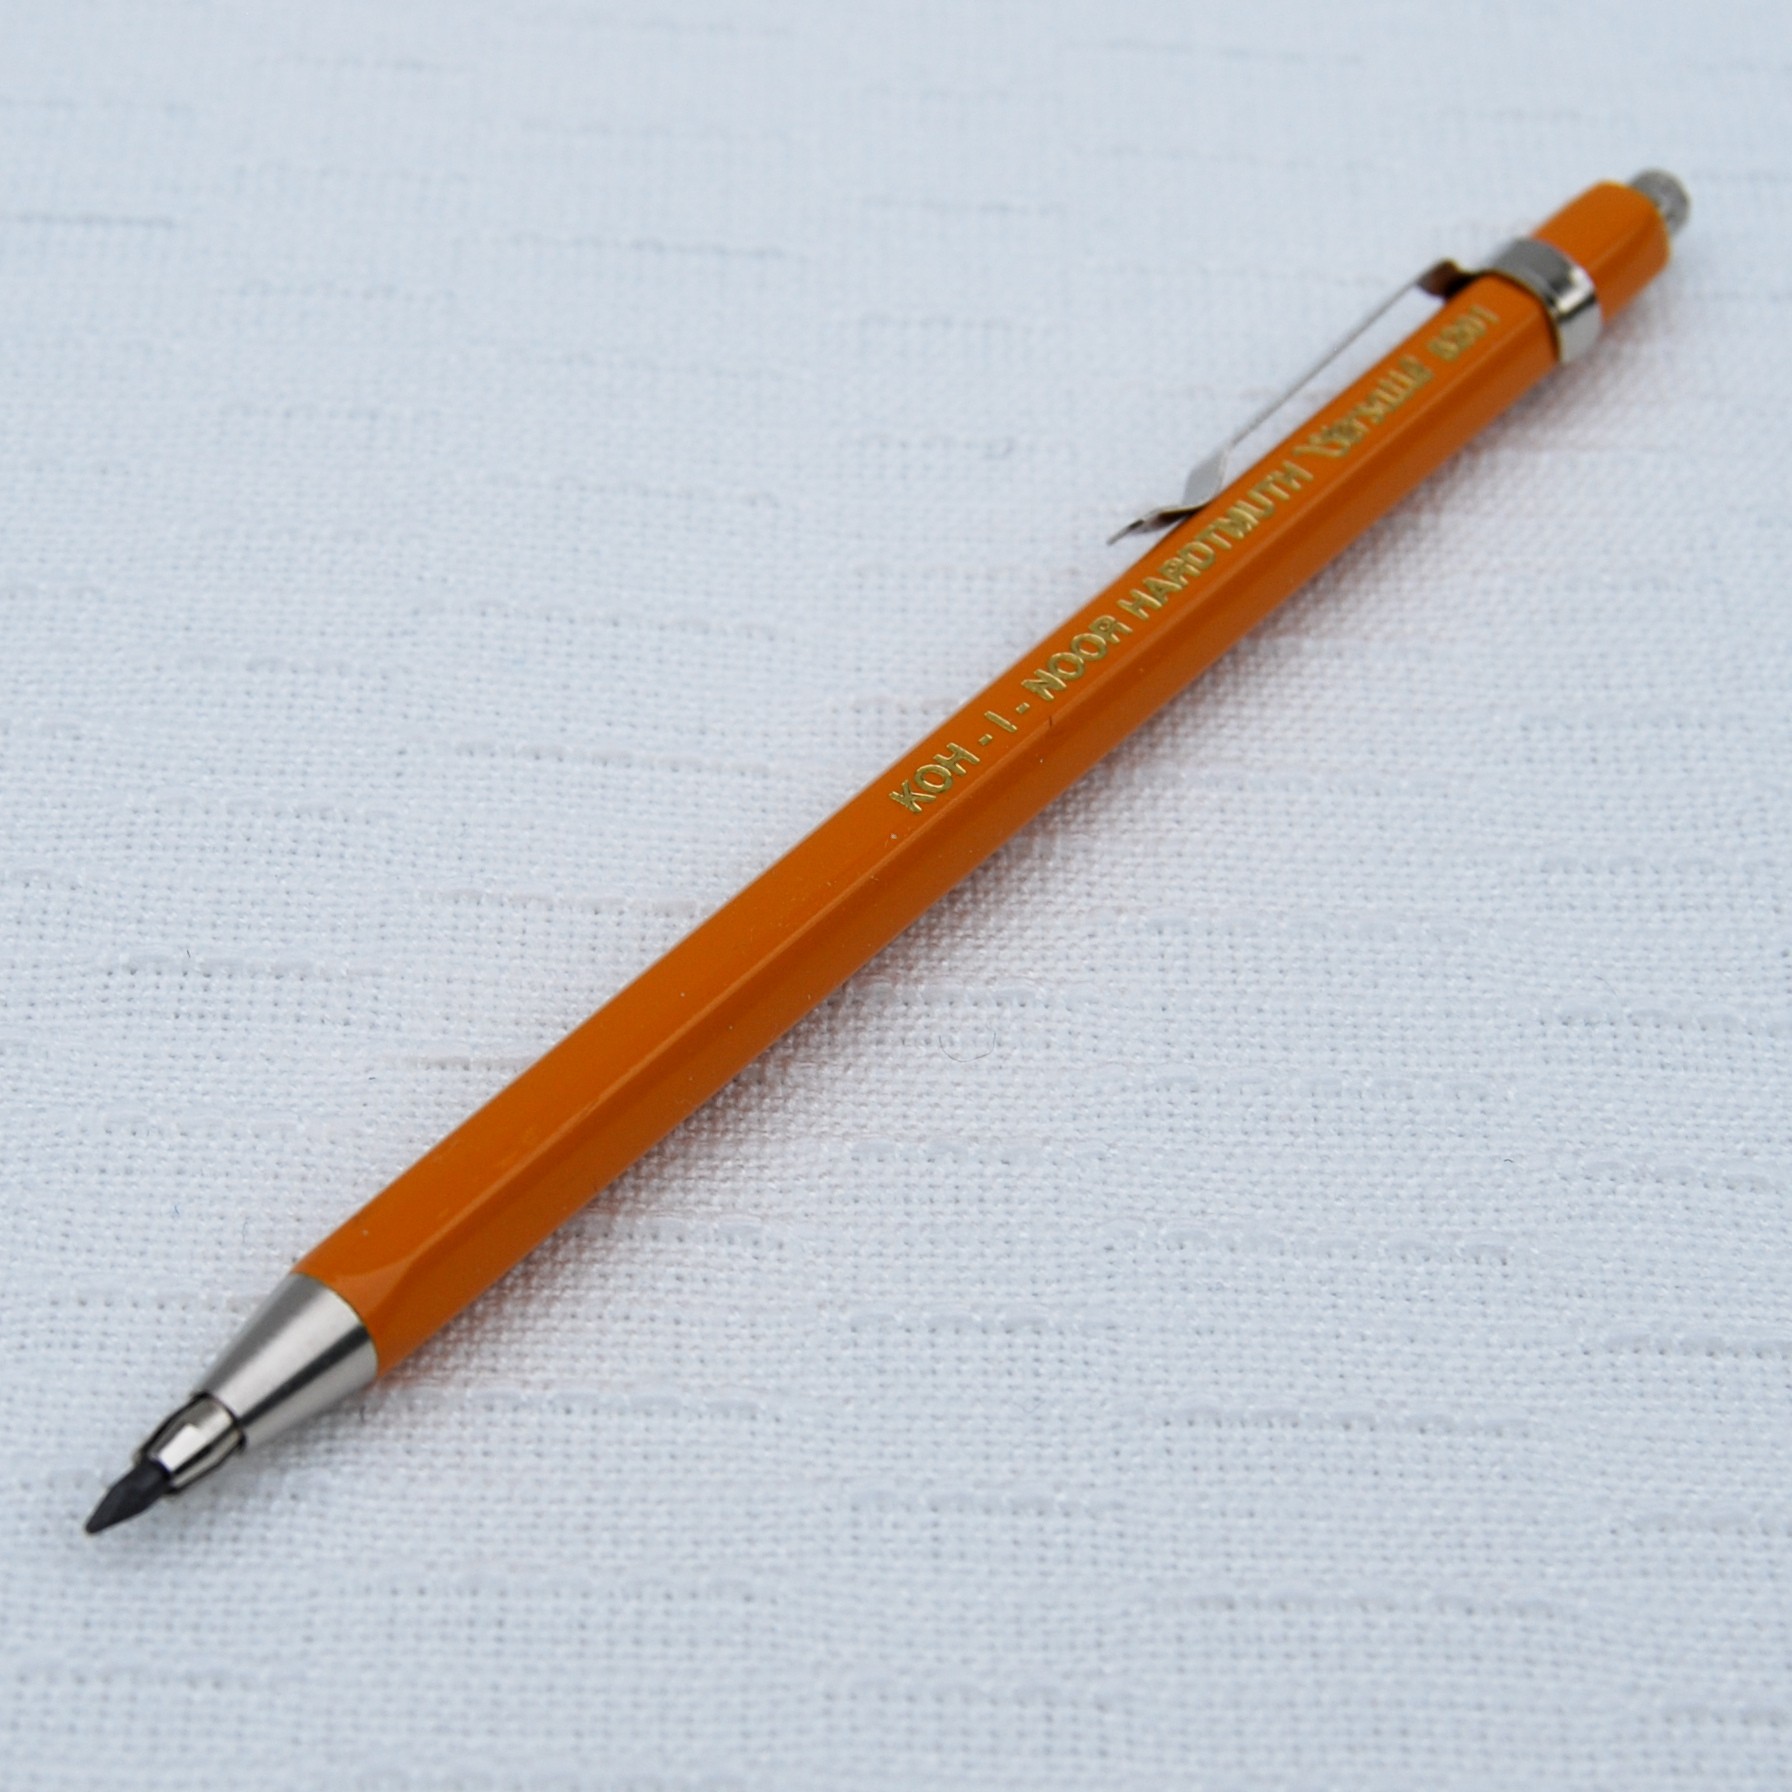 2x.Fallbleistift Fallminenstift Druckbleistift Bleistift Farben Süßigkeit D3A4 